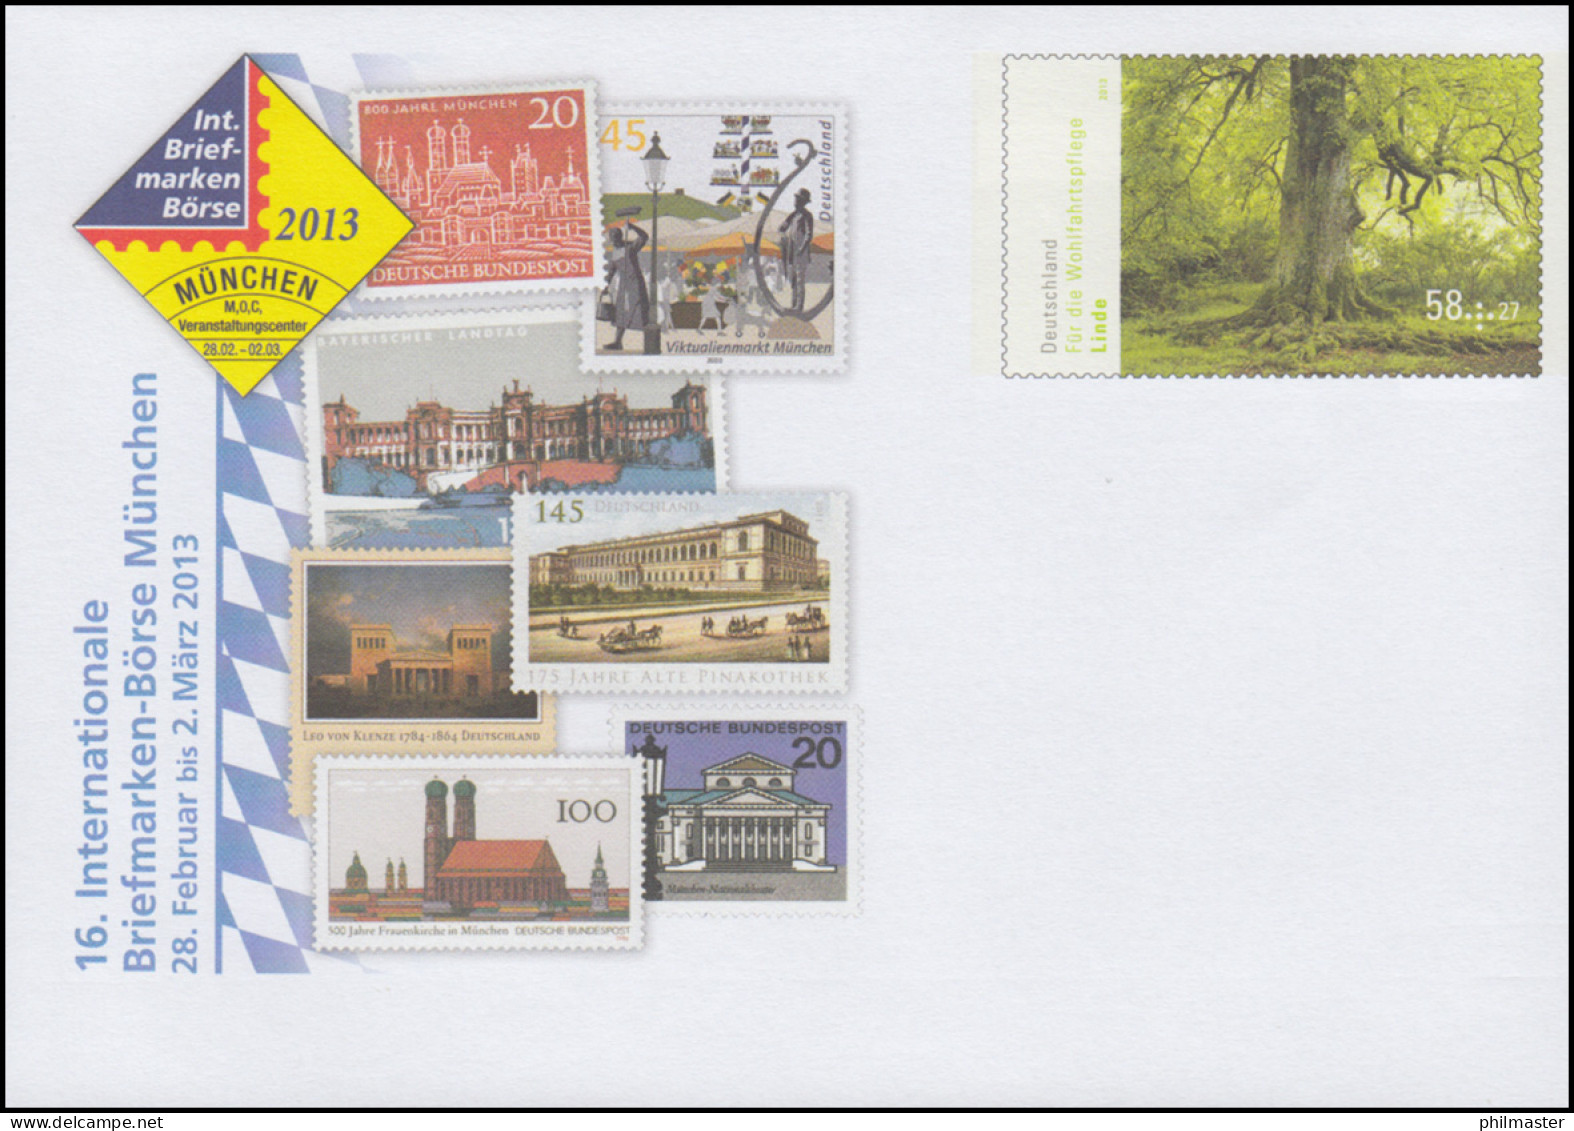 USo 283 Briefmarken-Börse München 2013, ** - Umschläge - Ungebraucht